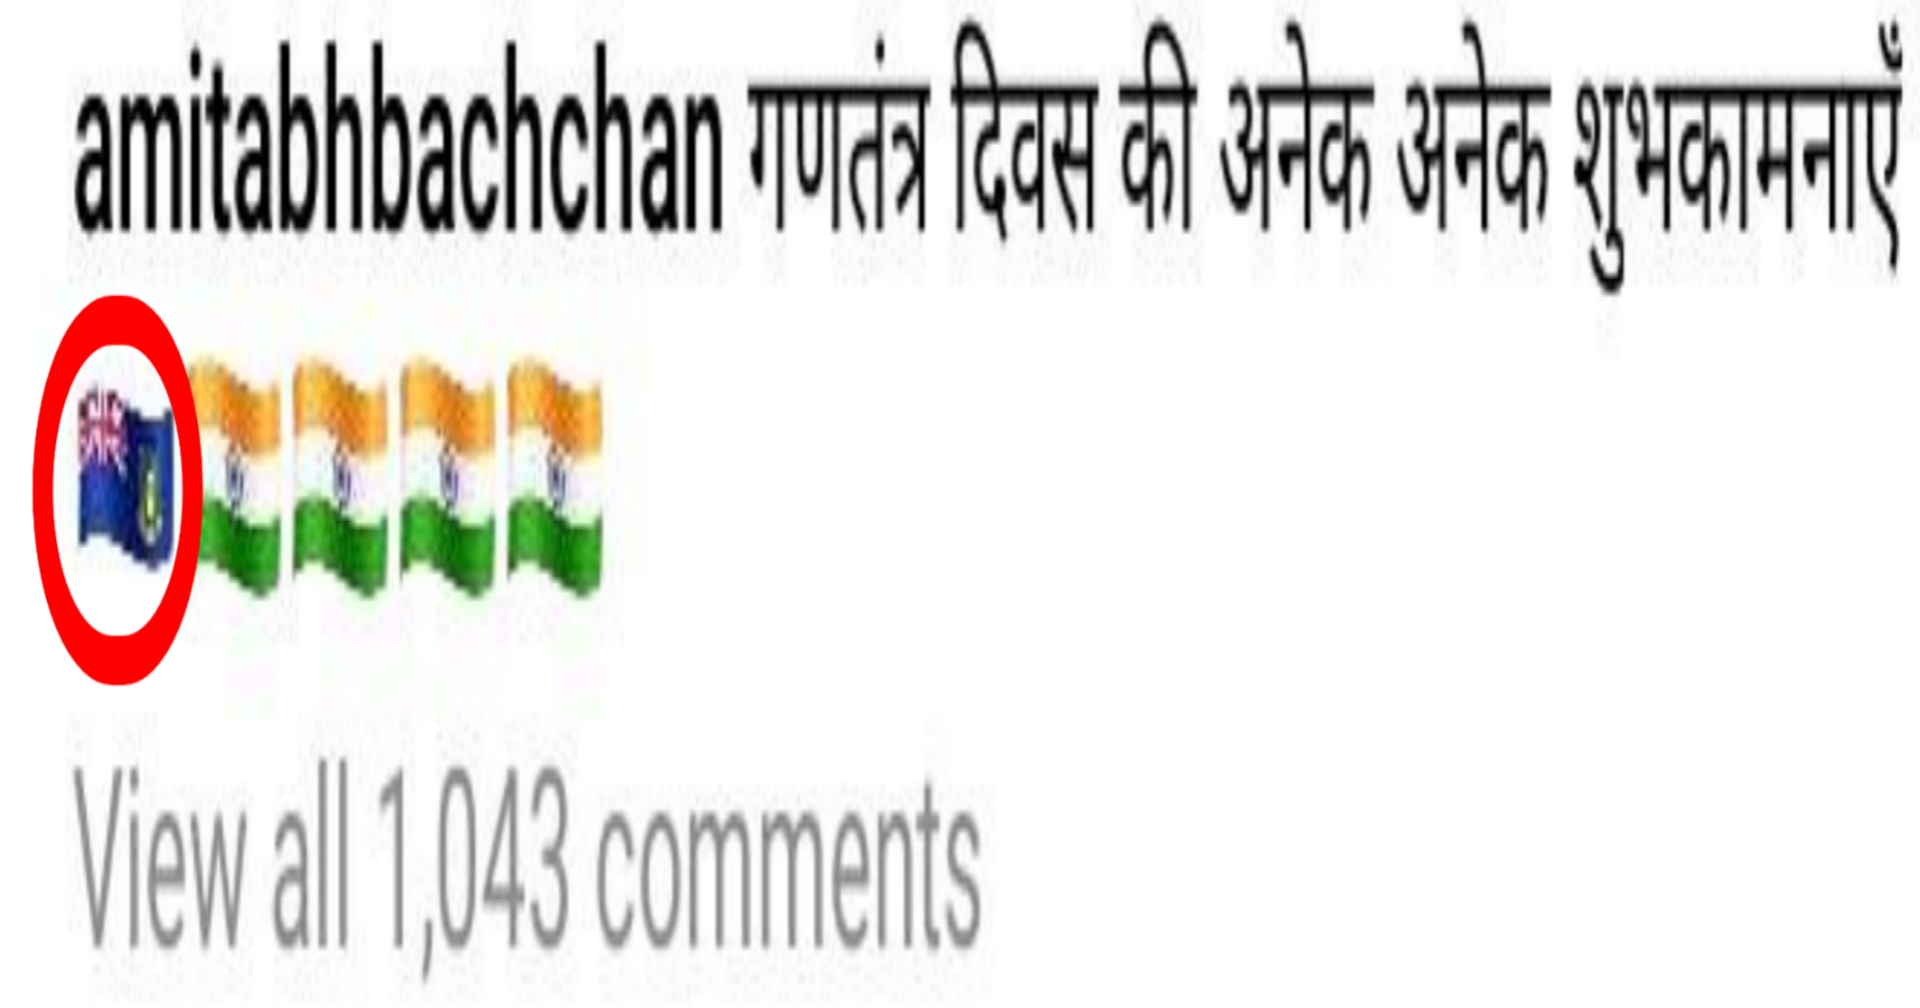 Amitabh bachchan